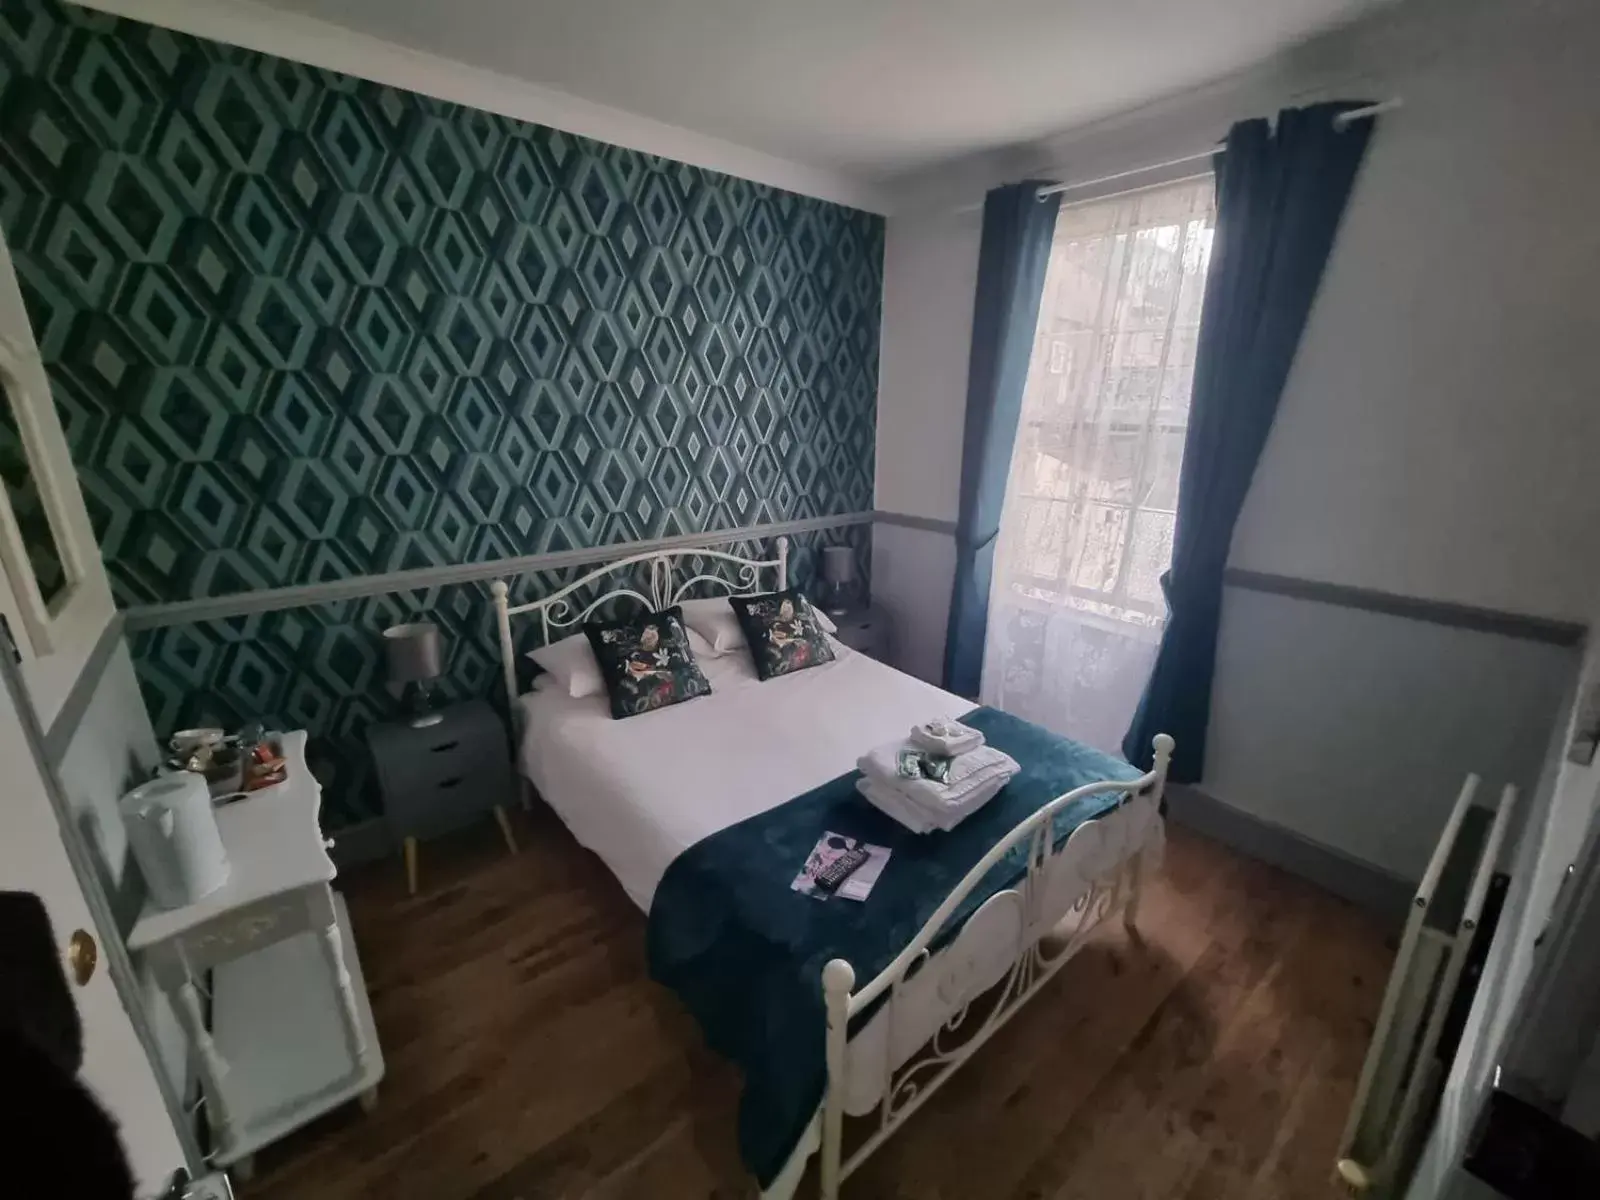 Bedroom, Bed in LilyRose Hotel